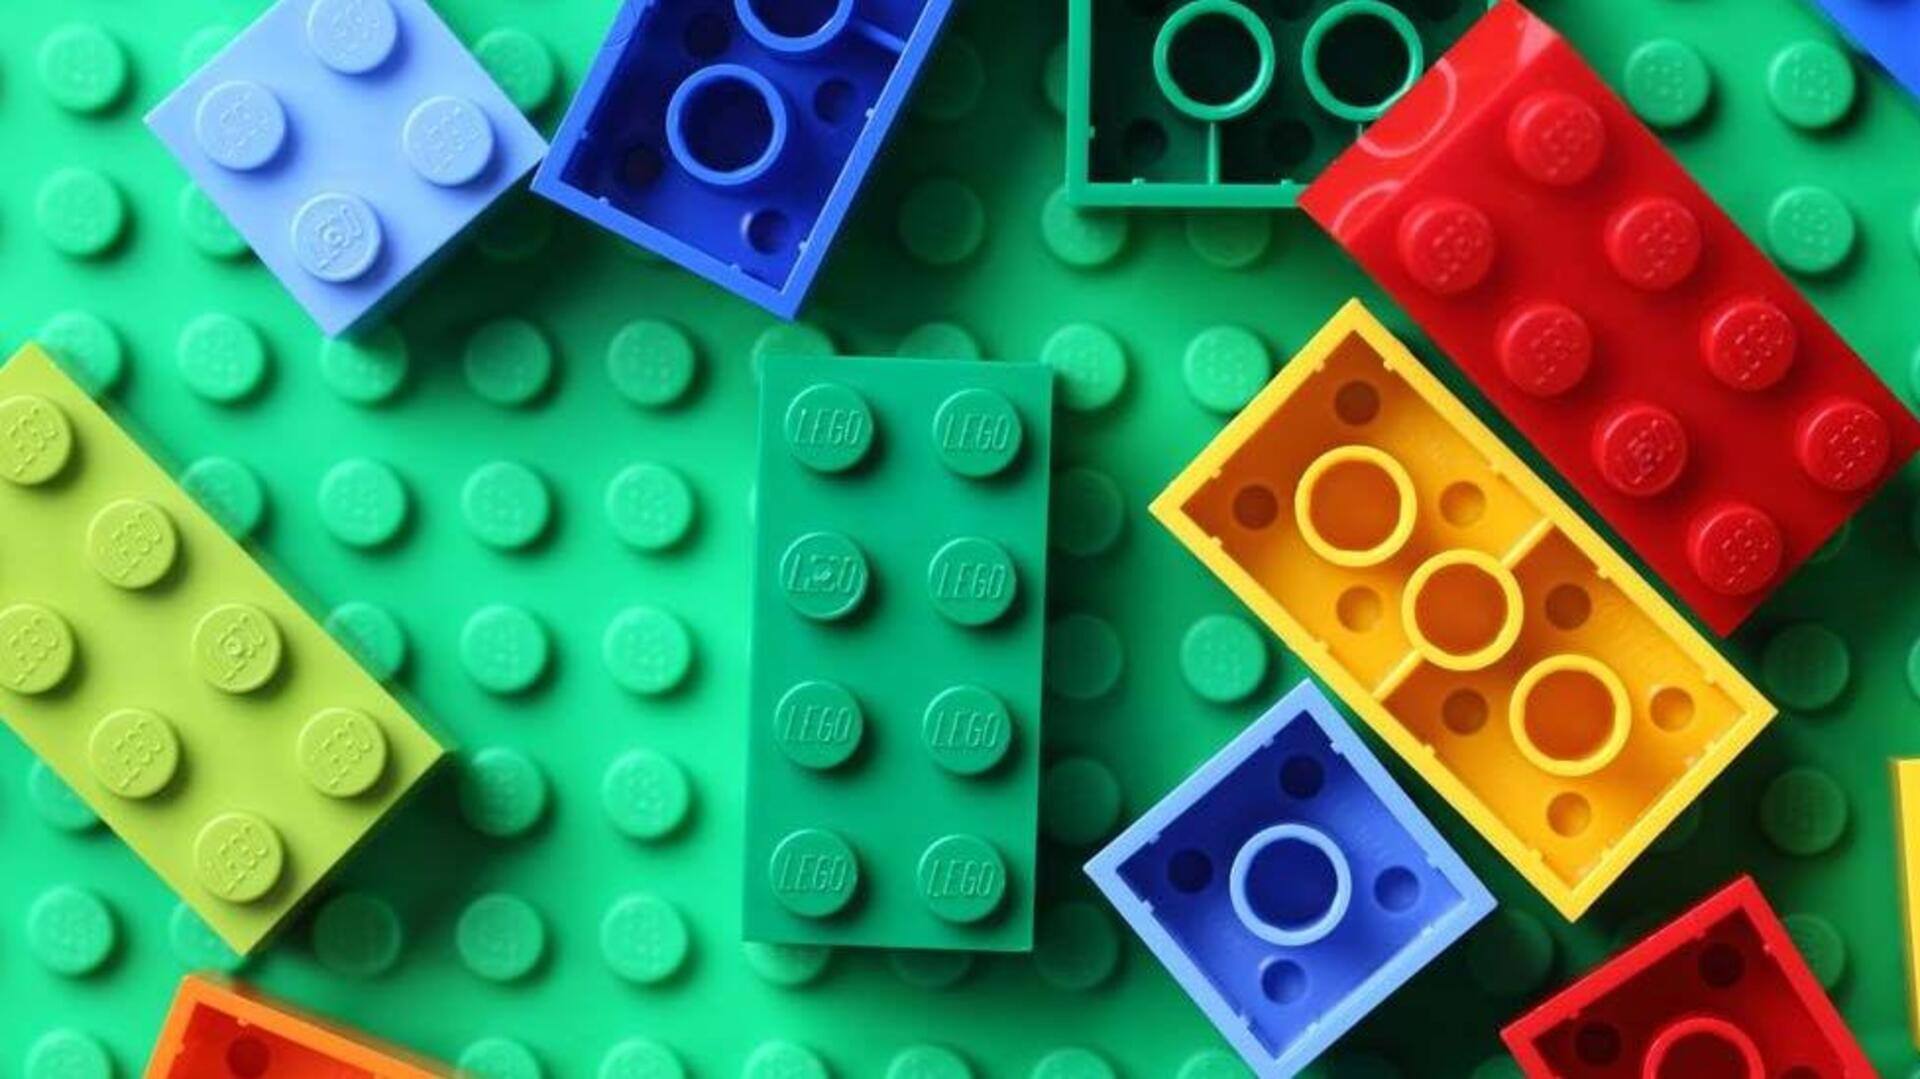 Lego shelves plan to make toy bricks from plastic bottles